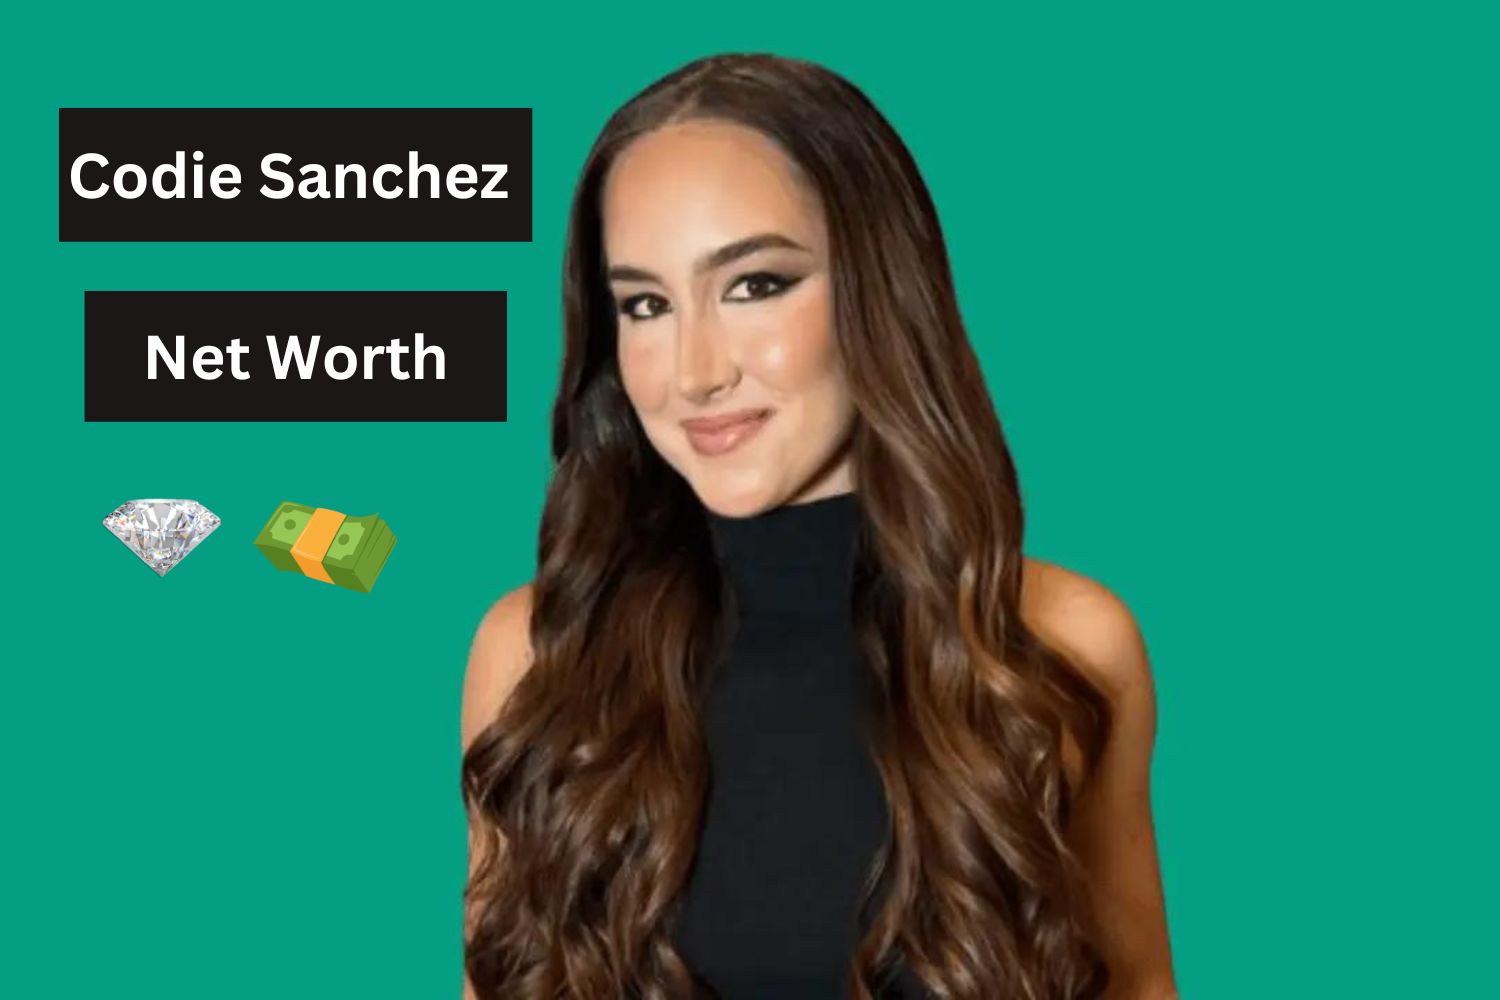 Codie Sanchez Net Worth